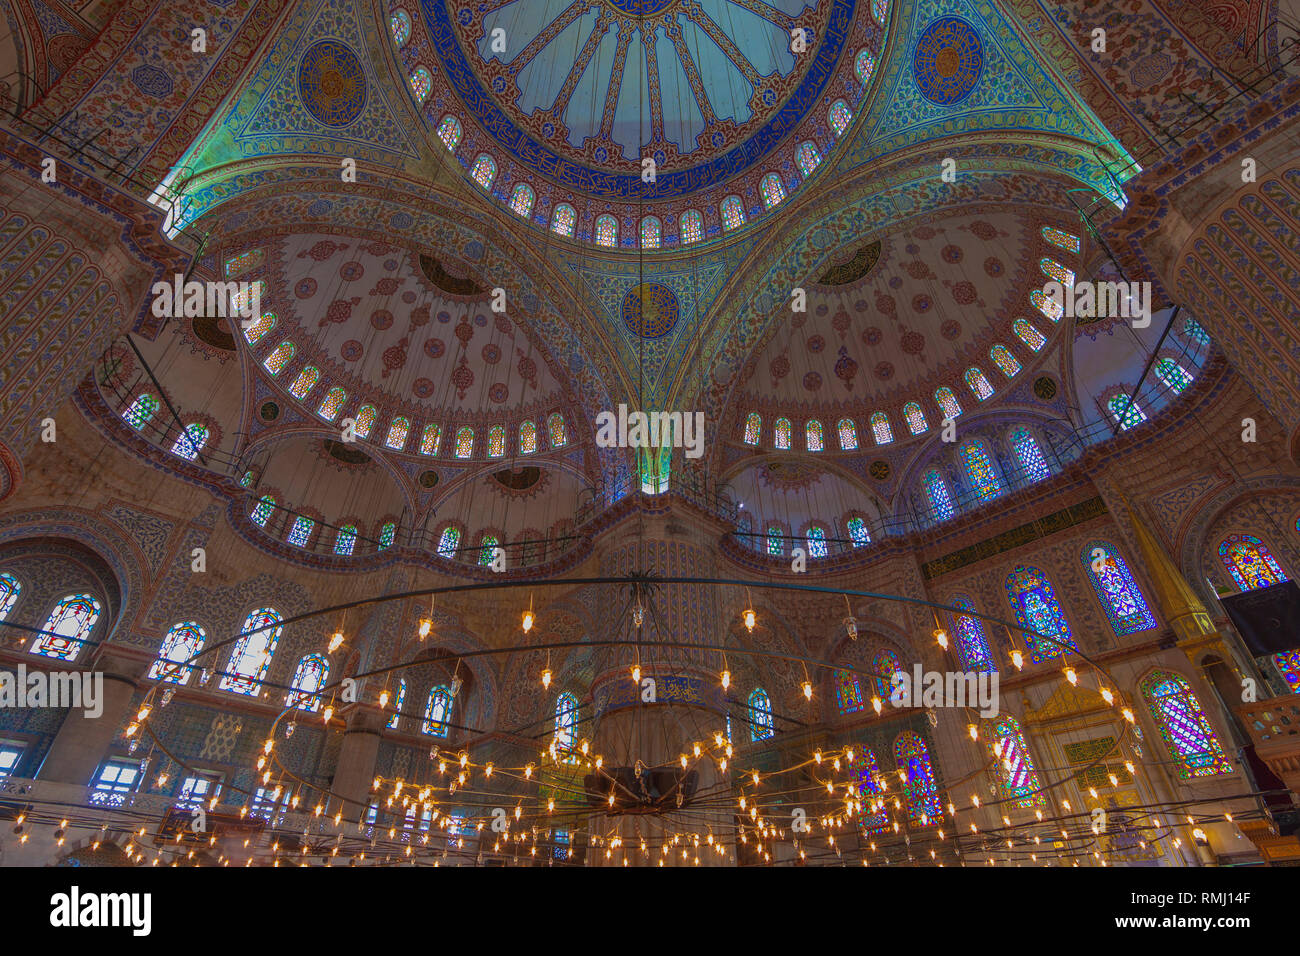 Mosquée bleue, vue intérieure sur le dôme bleu. Istanbul, Turquie Banque D'Images